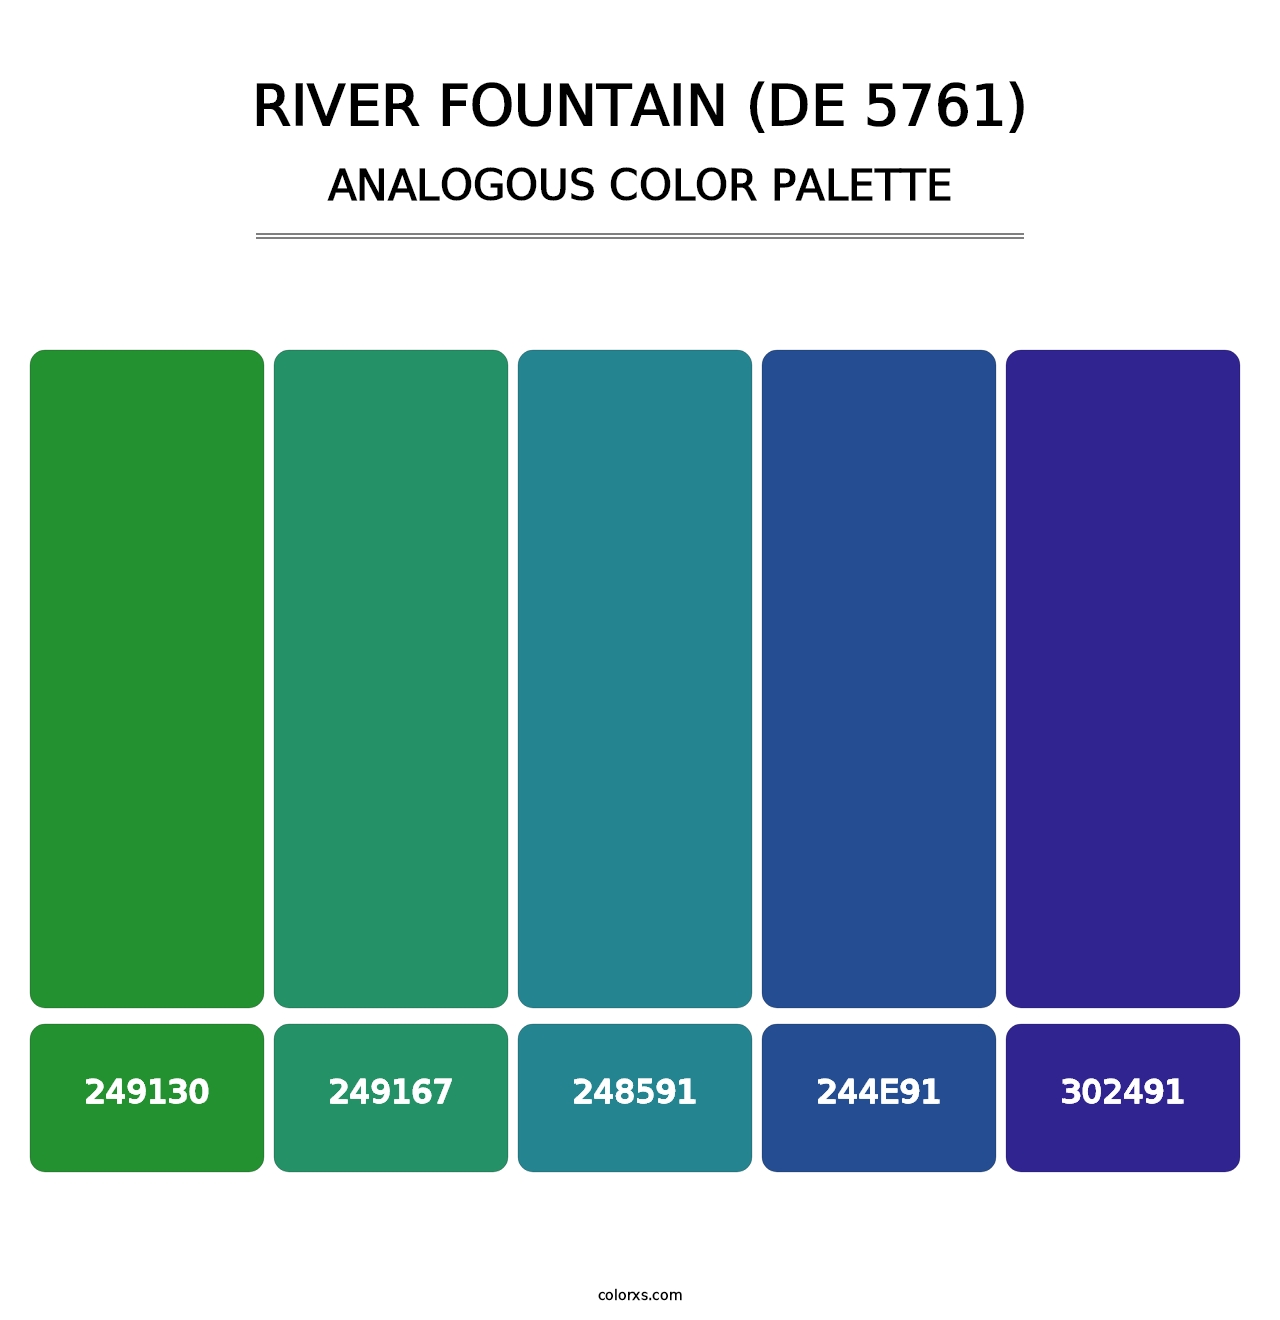 River Fountain (DE 5761) - Analogous Color Palette